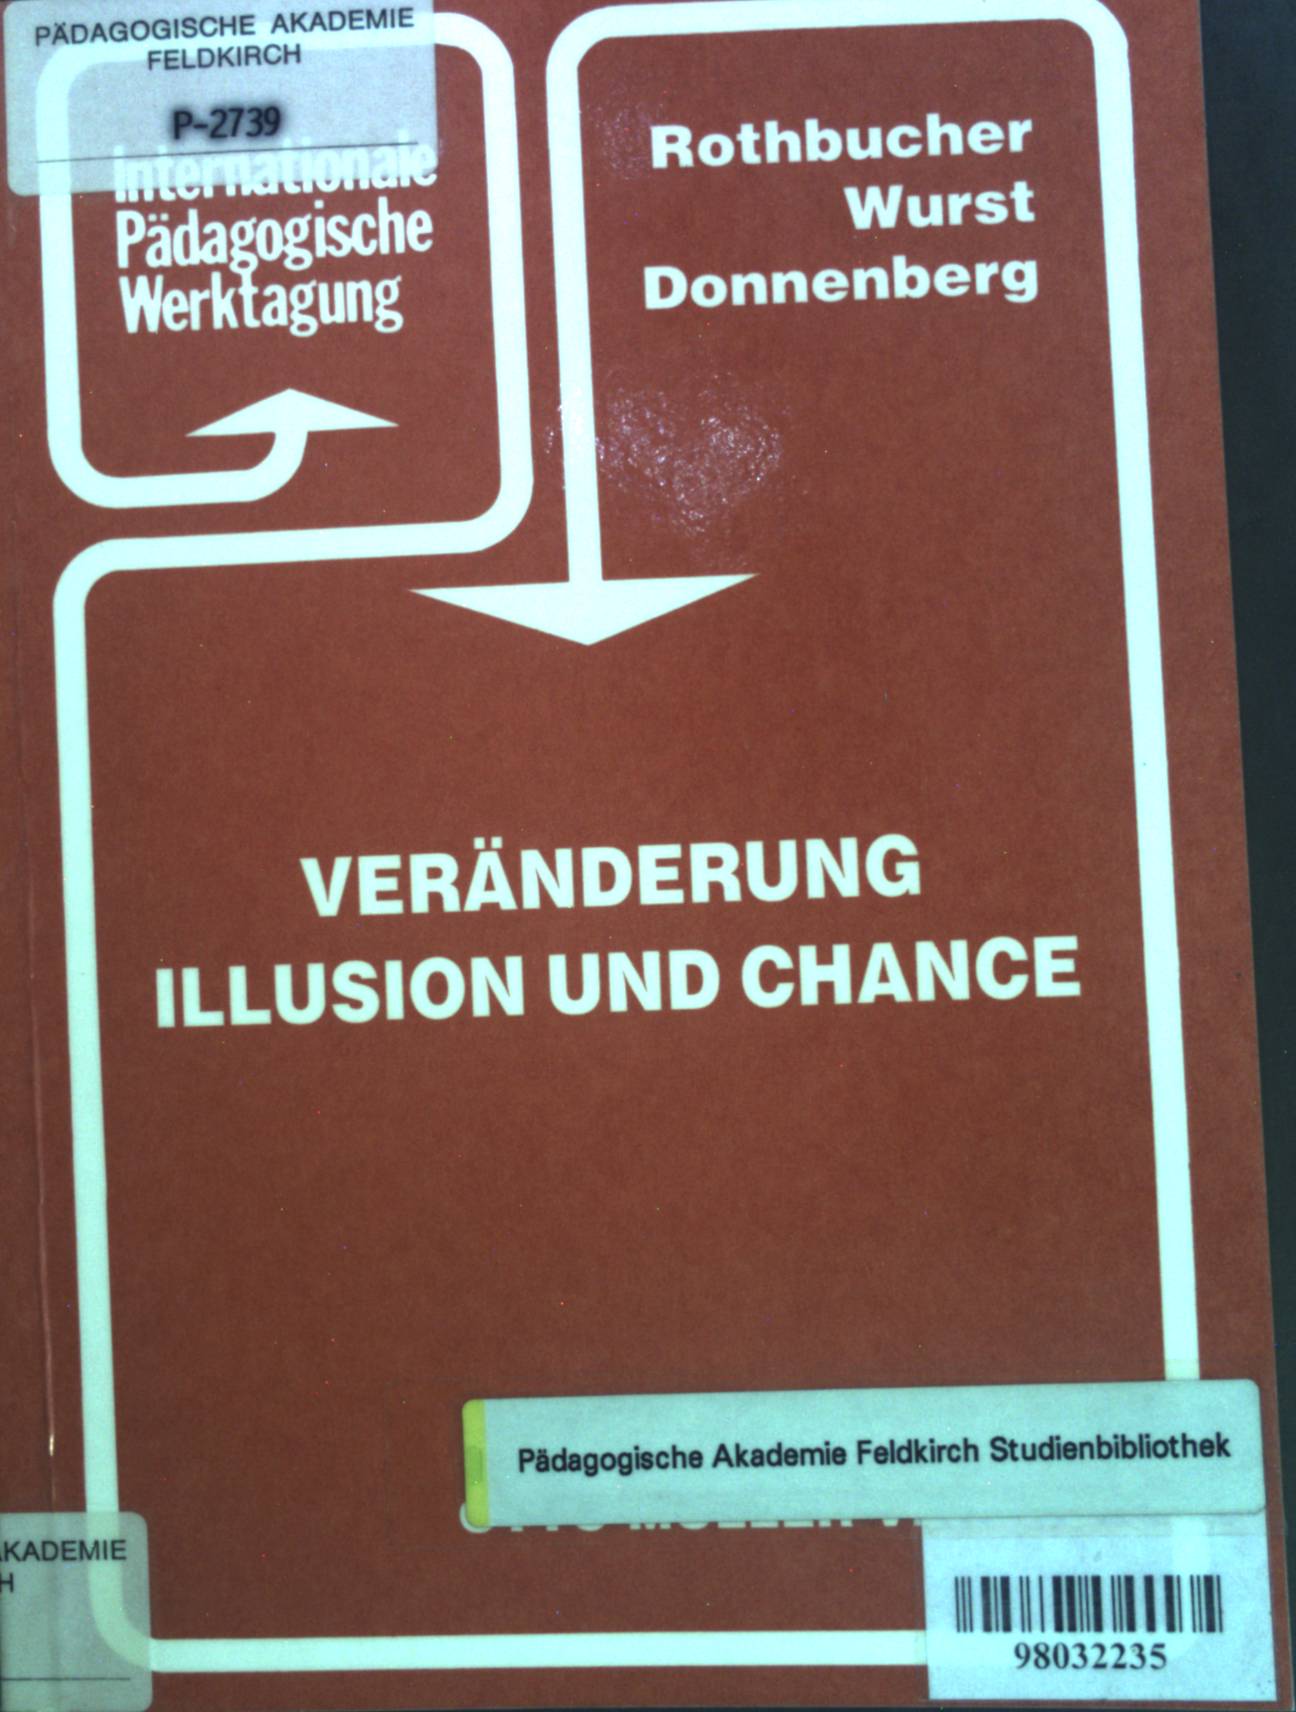 Veränderung, Illusion und Chance. Internationale Pädagogische Werktagung Berichtband 1991. - Wurst, Franz, Heinz Rothbucher und Rosemarie Donnenberg